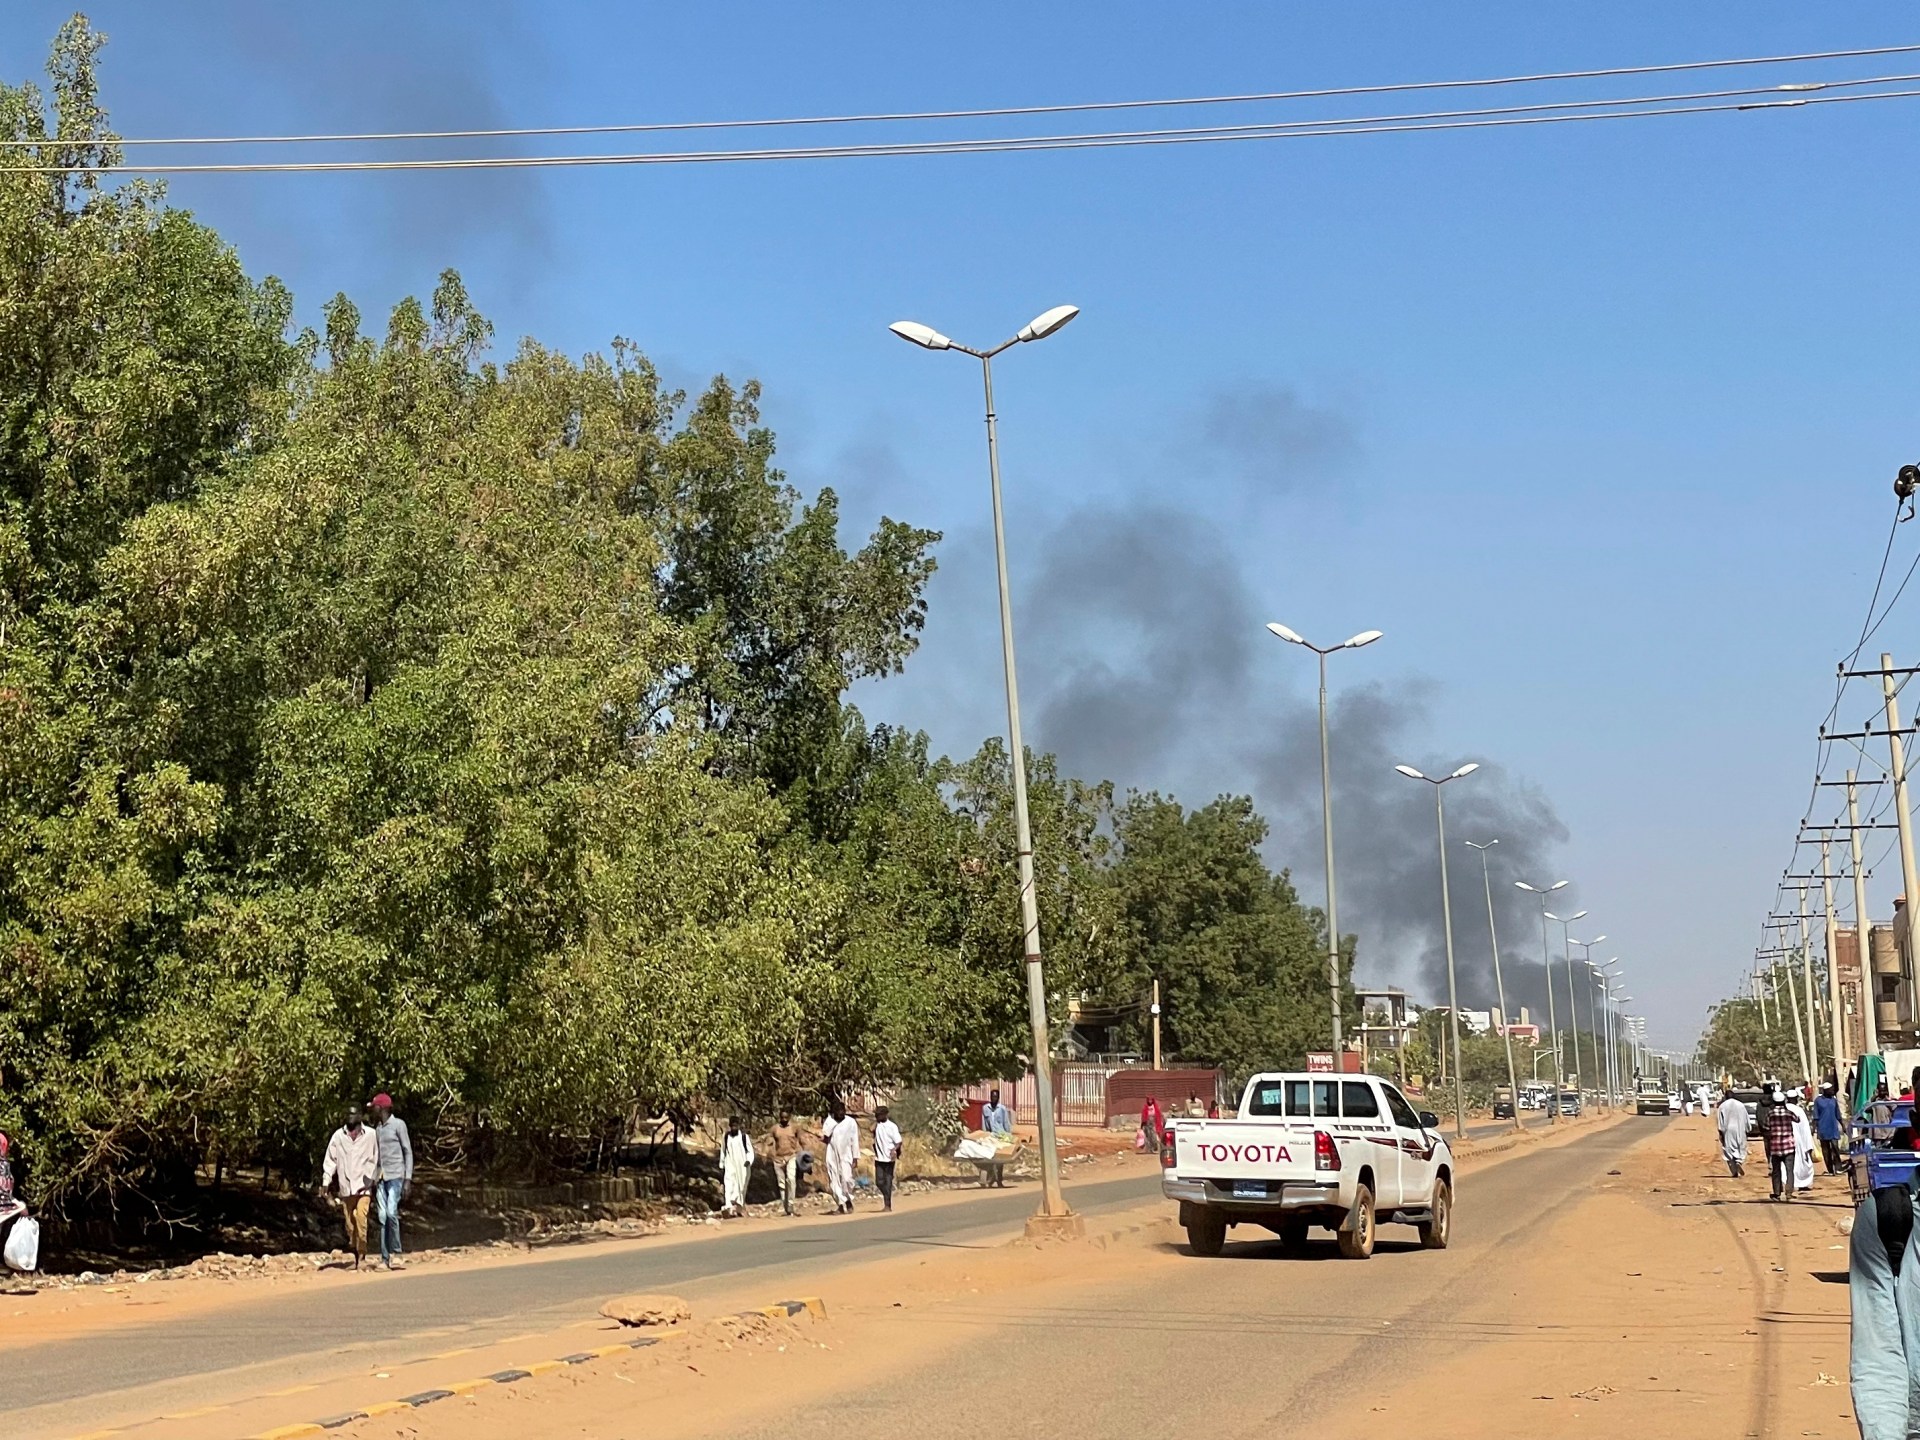 السودان.. قوات الدعم السريع تدخل “ود مدني” ومئات الآلاف يفرون | أخبار – البوكس نيوز